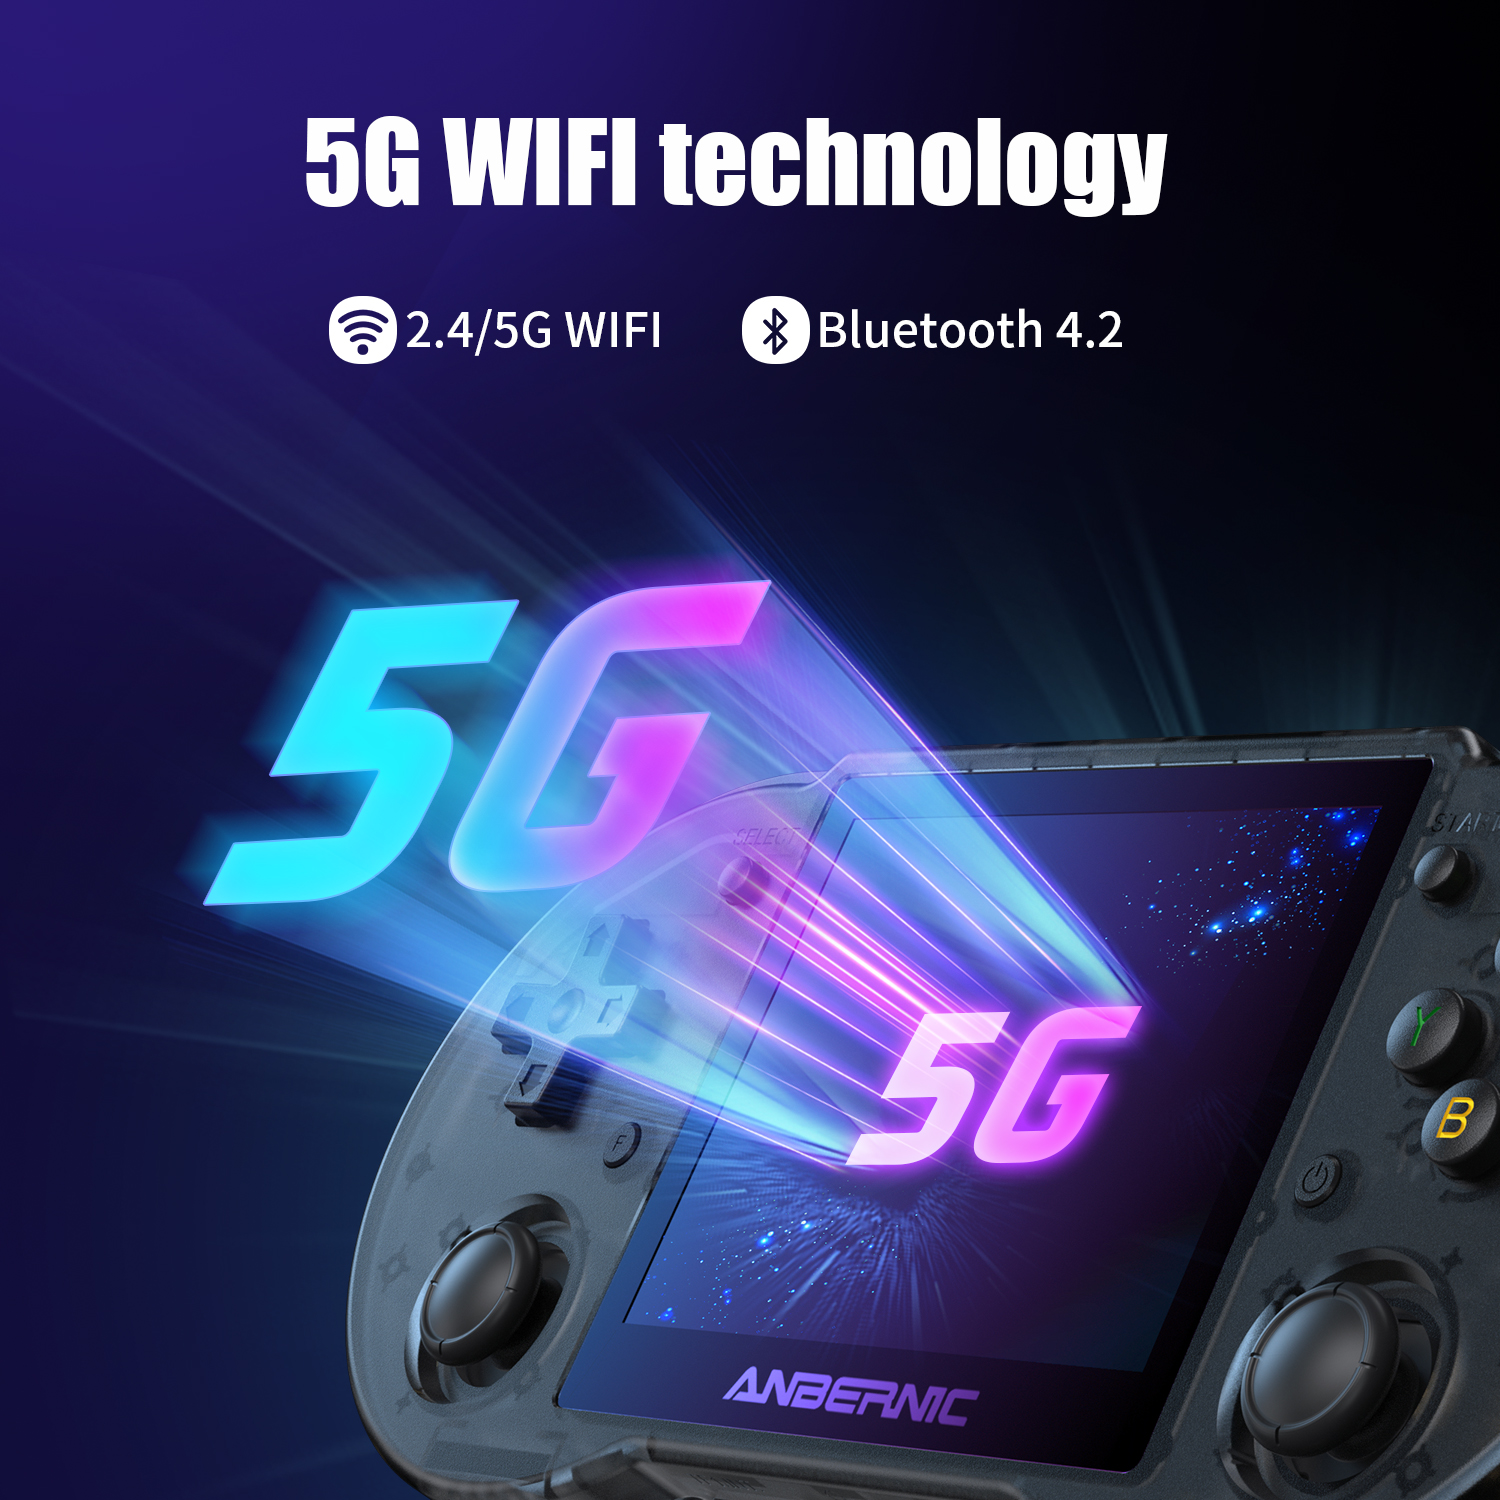 RG353P supporte la technologie WiFI 5G